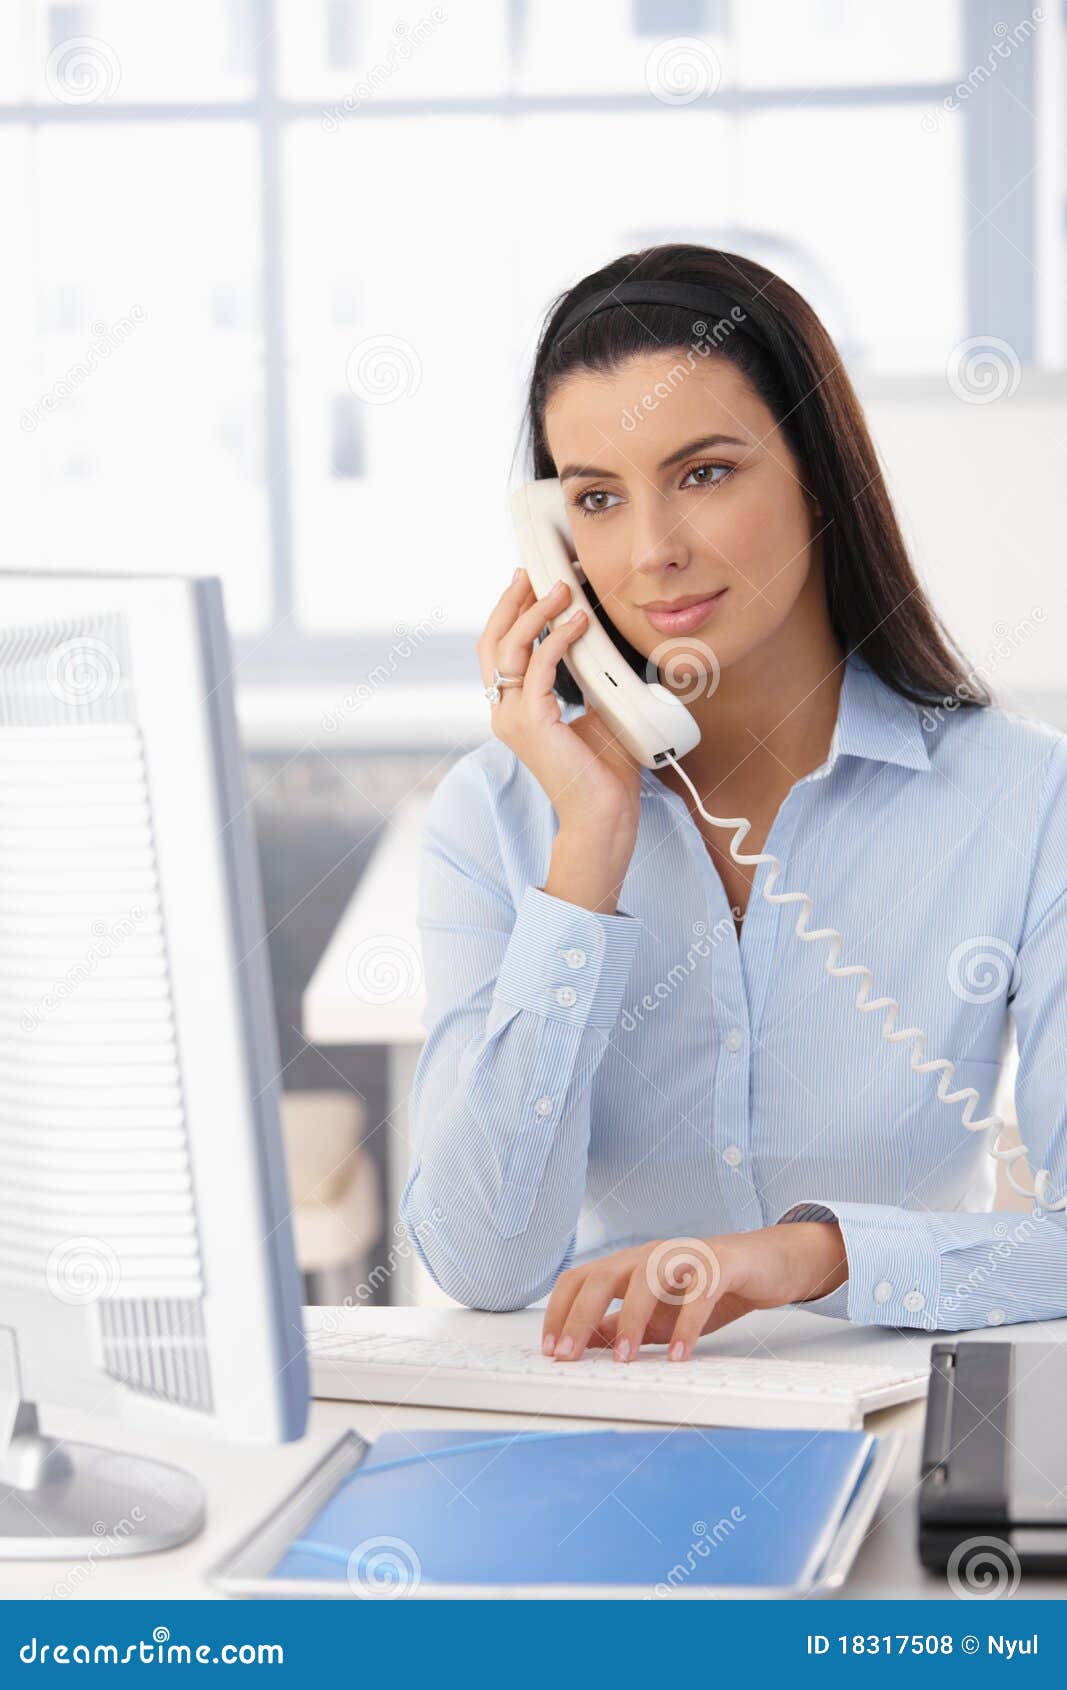 office girl on landline call